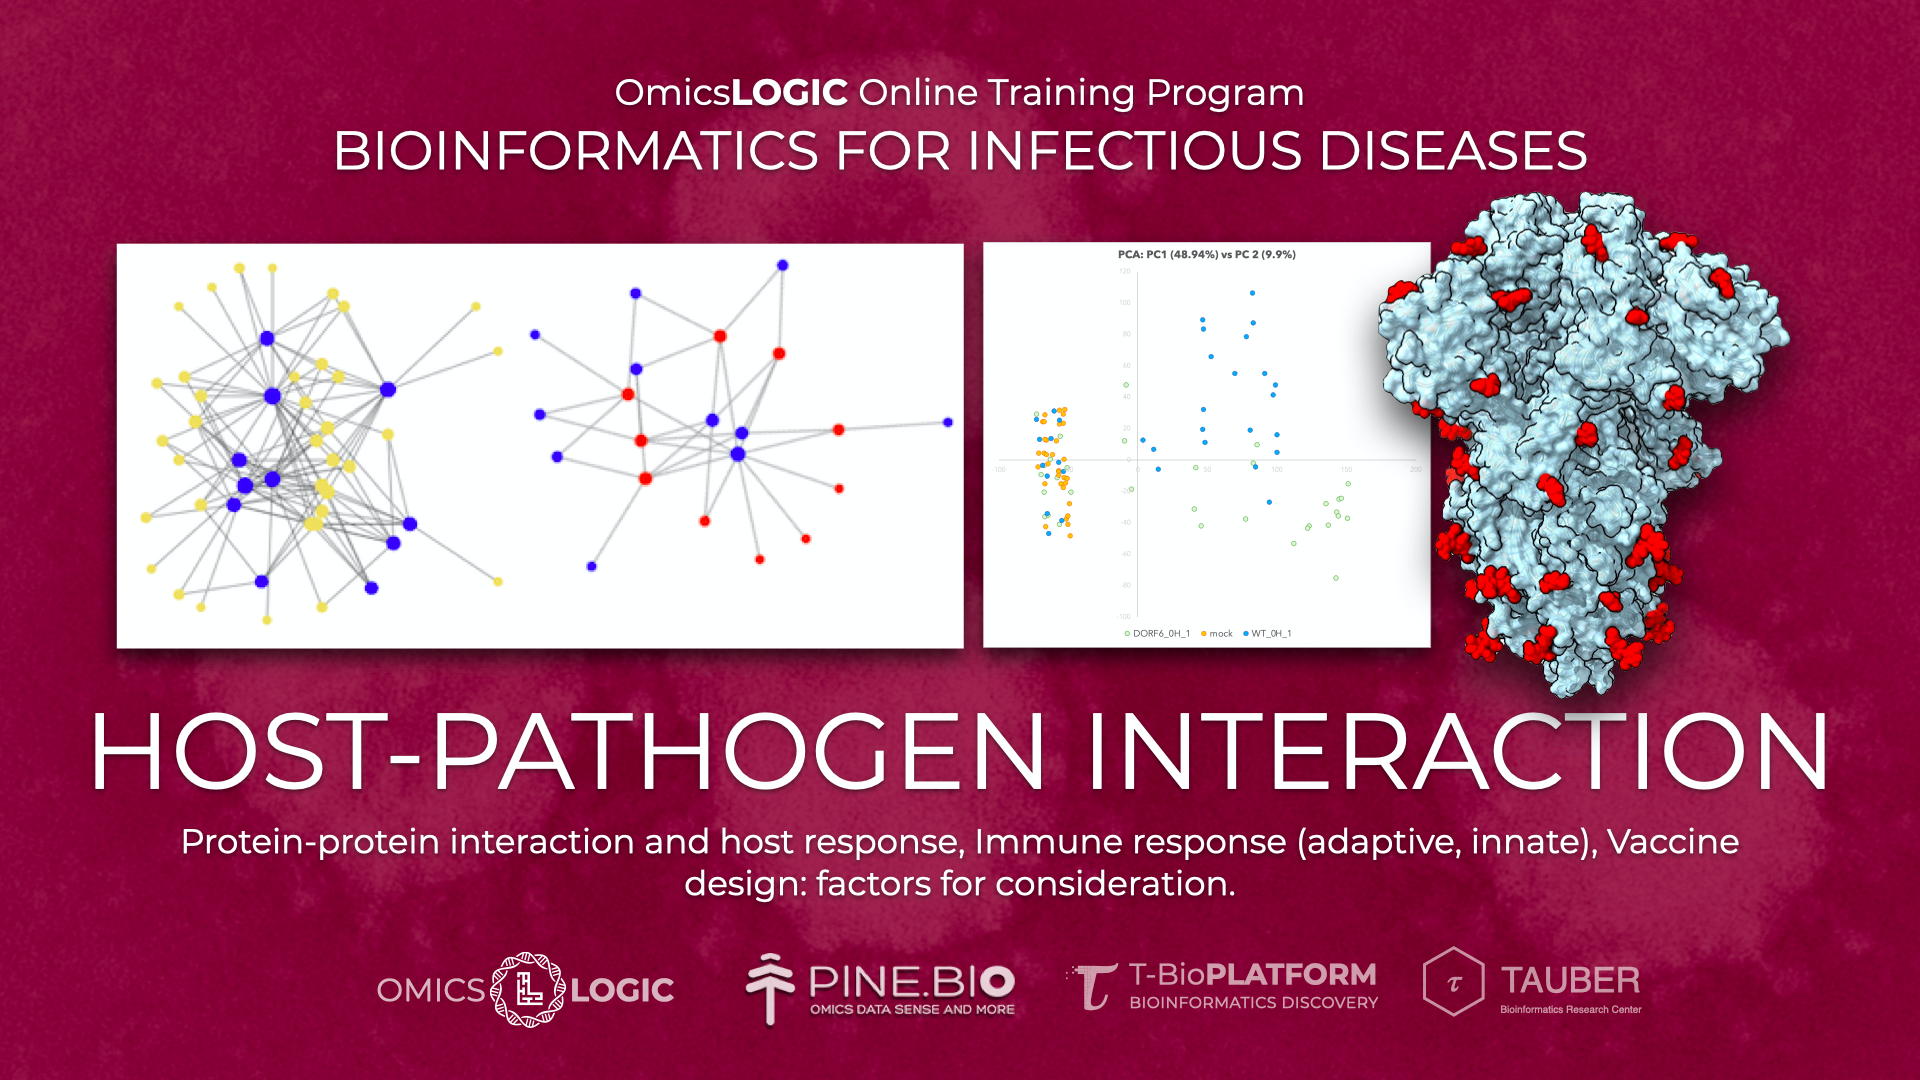 Host pathogen interaction